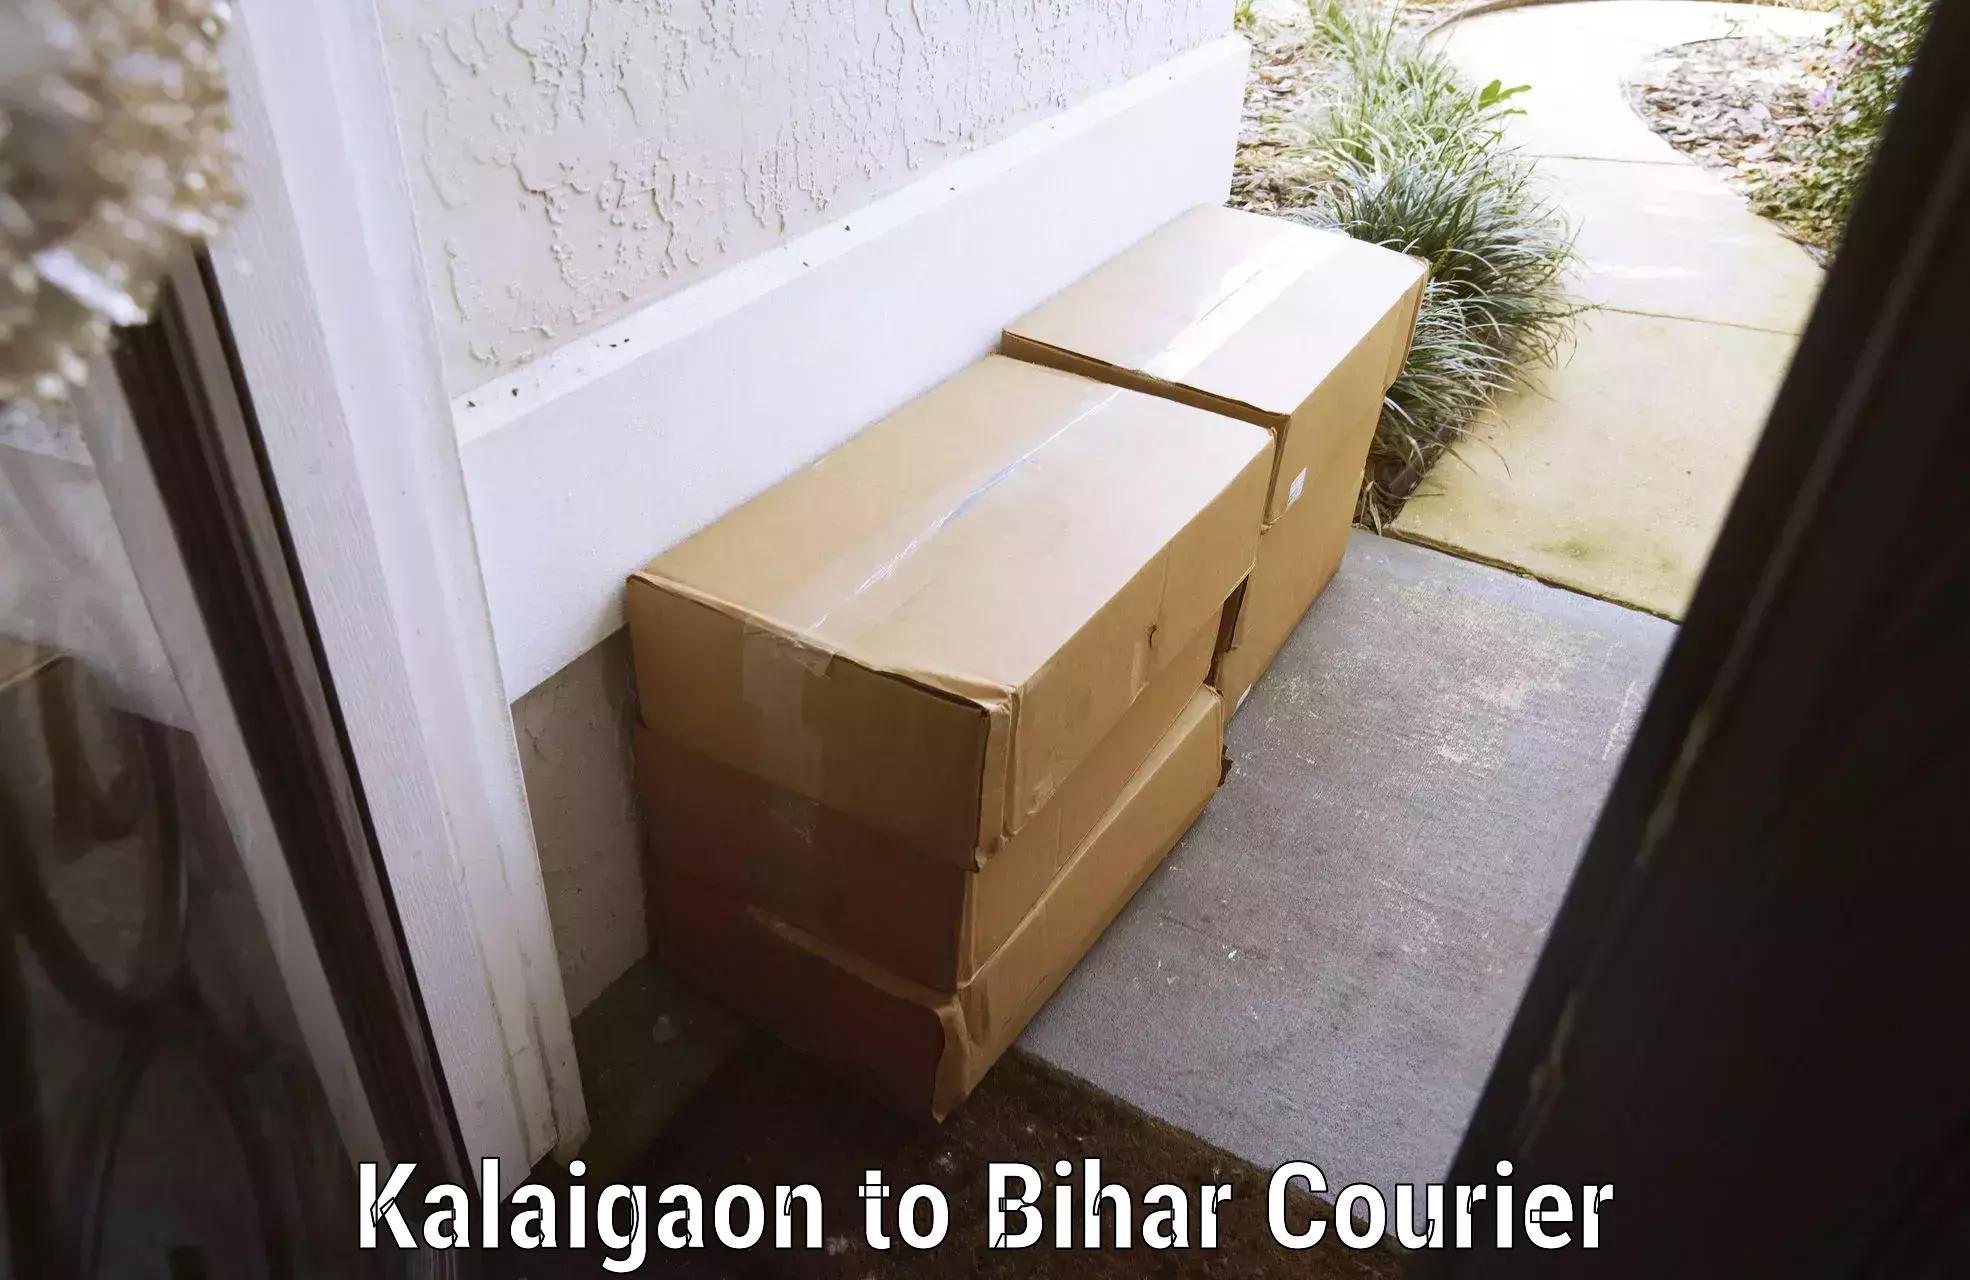 Door-to-door baggage service Kalaigaon to Bihar